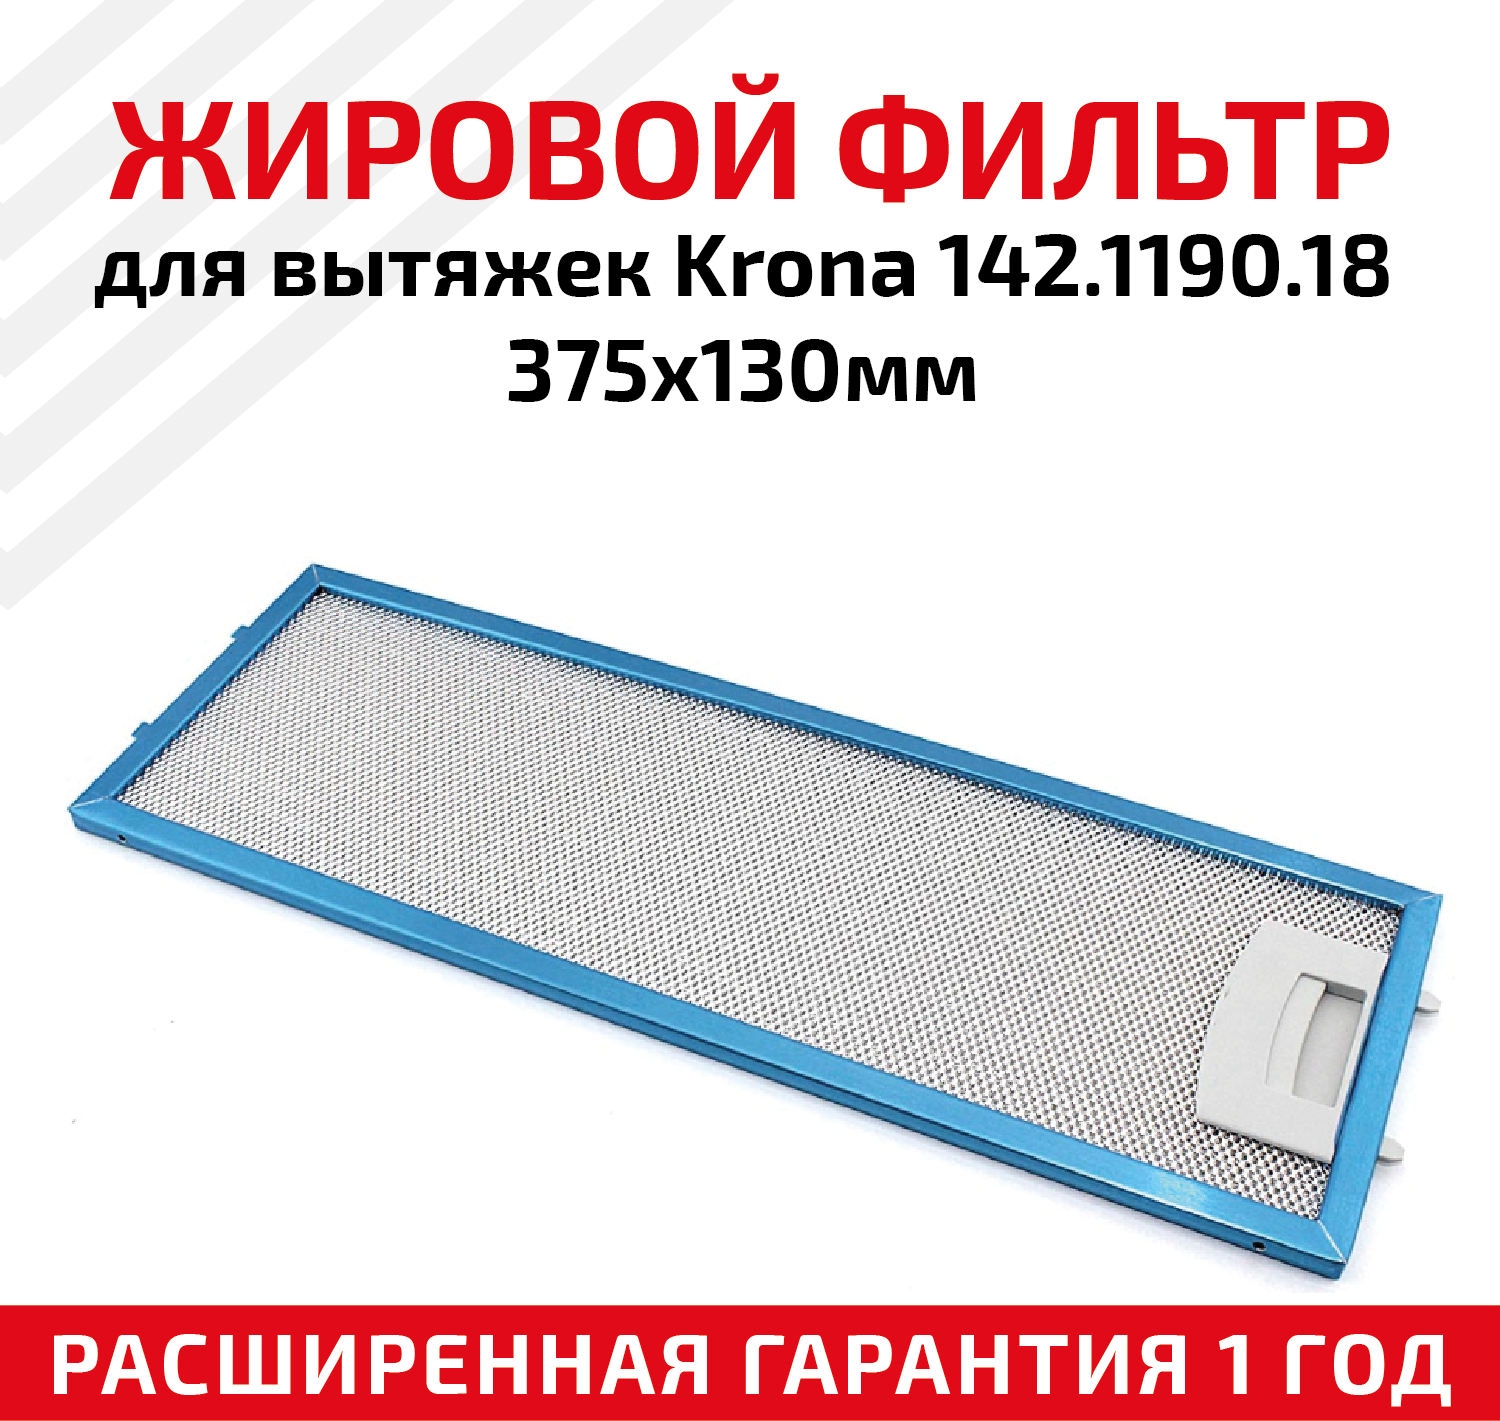 Жировой фильтр (кассета) алюминиевый (металлический) рамочный для вытяжек Krona 142.1190.18 многоразовый 375х130мм